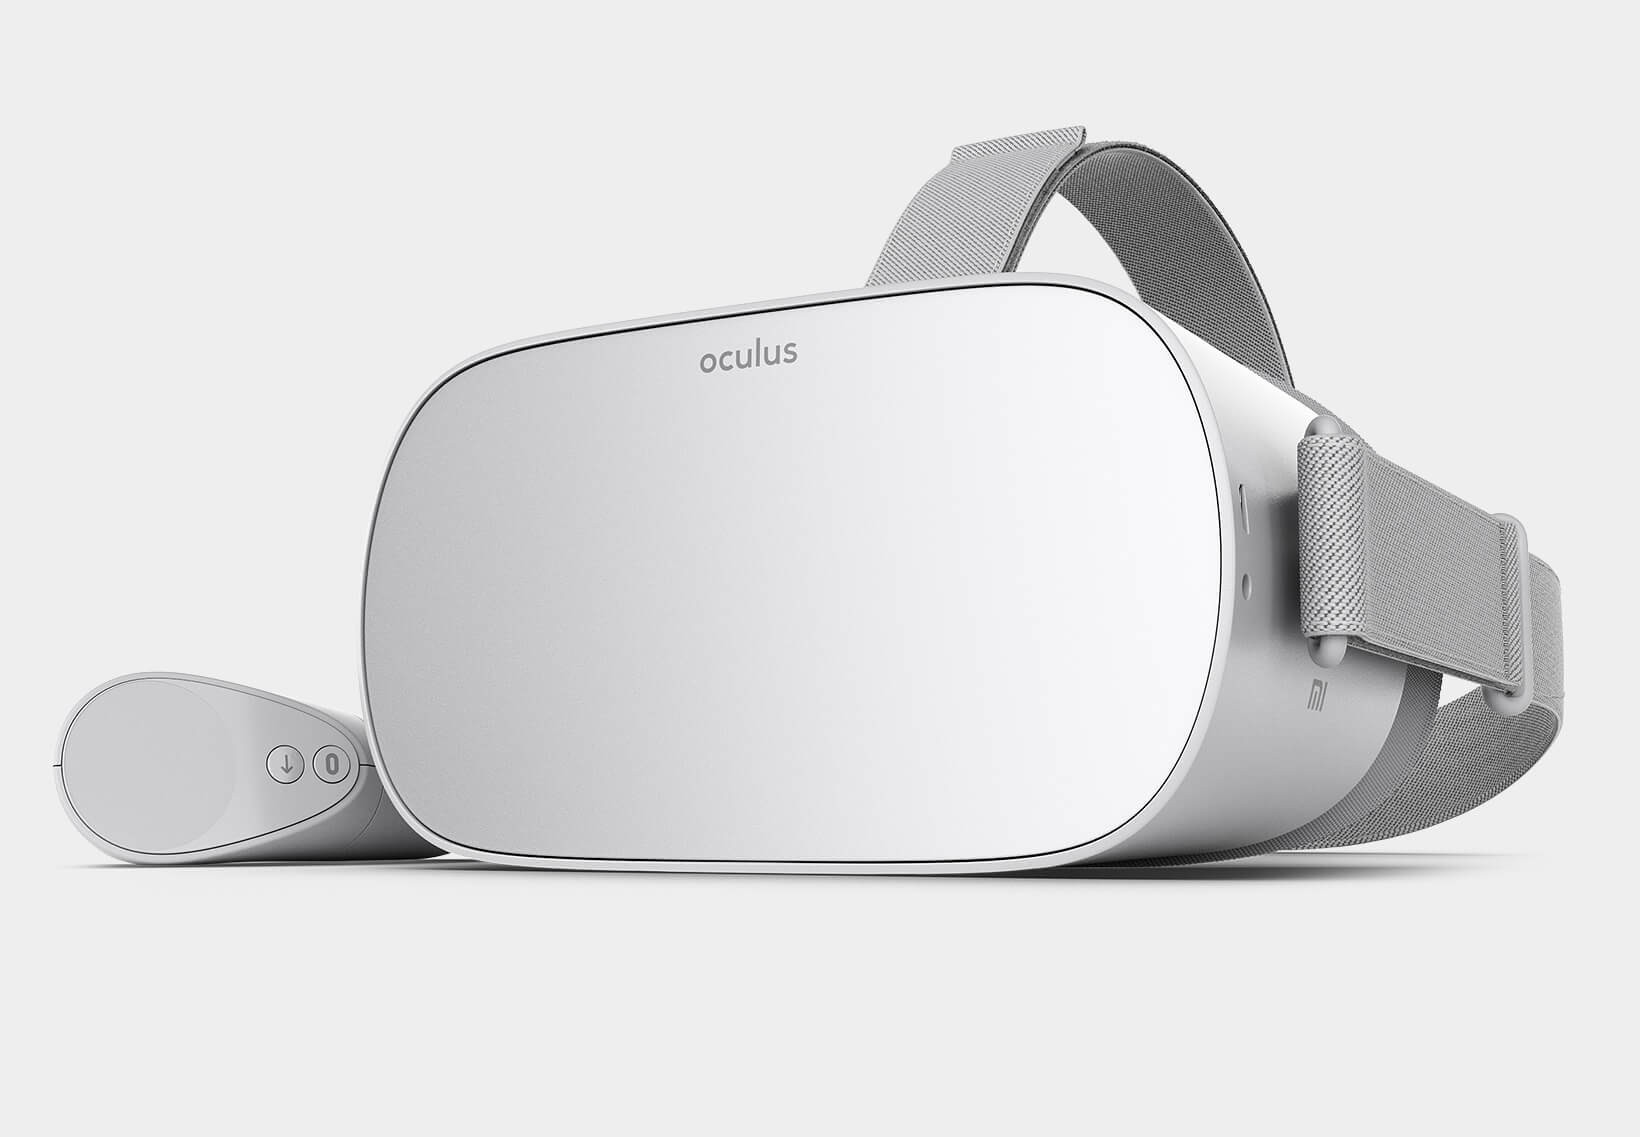 W pełni odblokowany system operacyjny Oculus Go dostępny już dla wszystkich